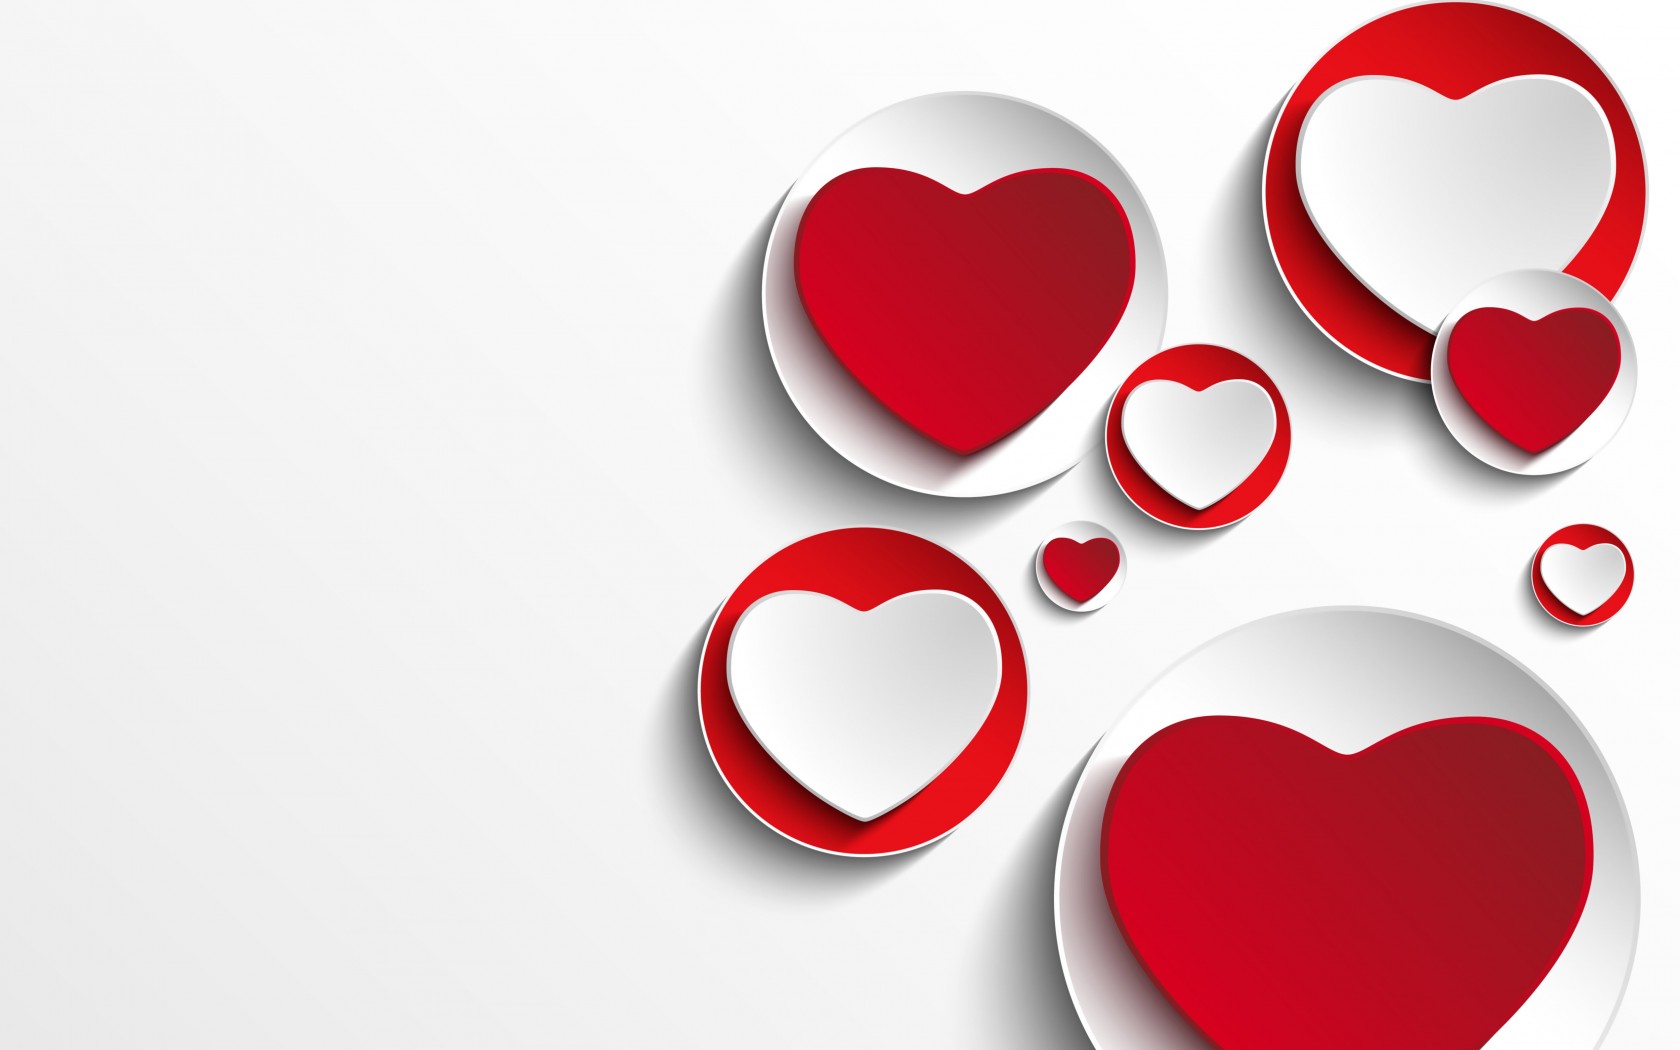 Minimalistic Hearts Shapes Wallpaper for Desktop 1680x1050